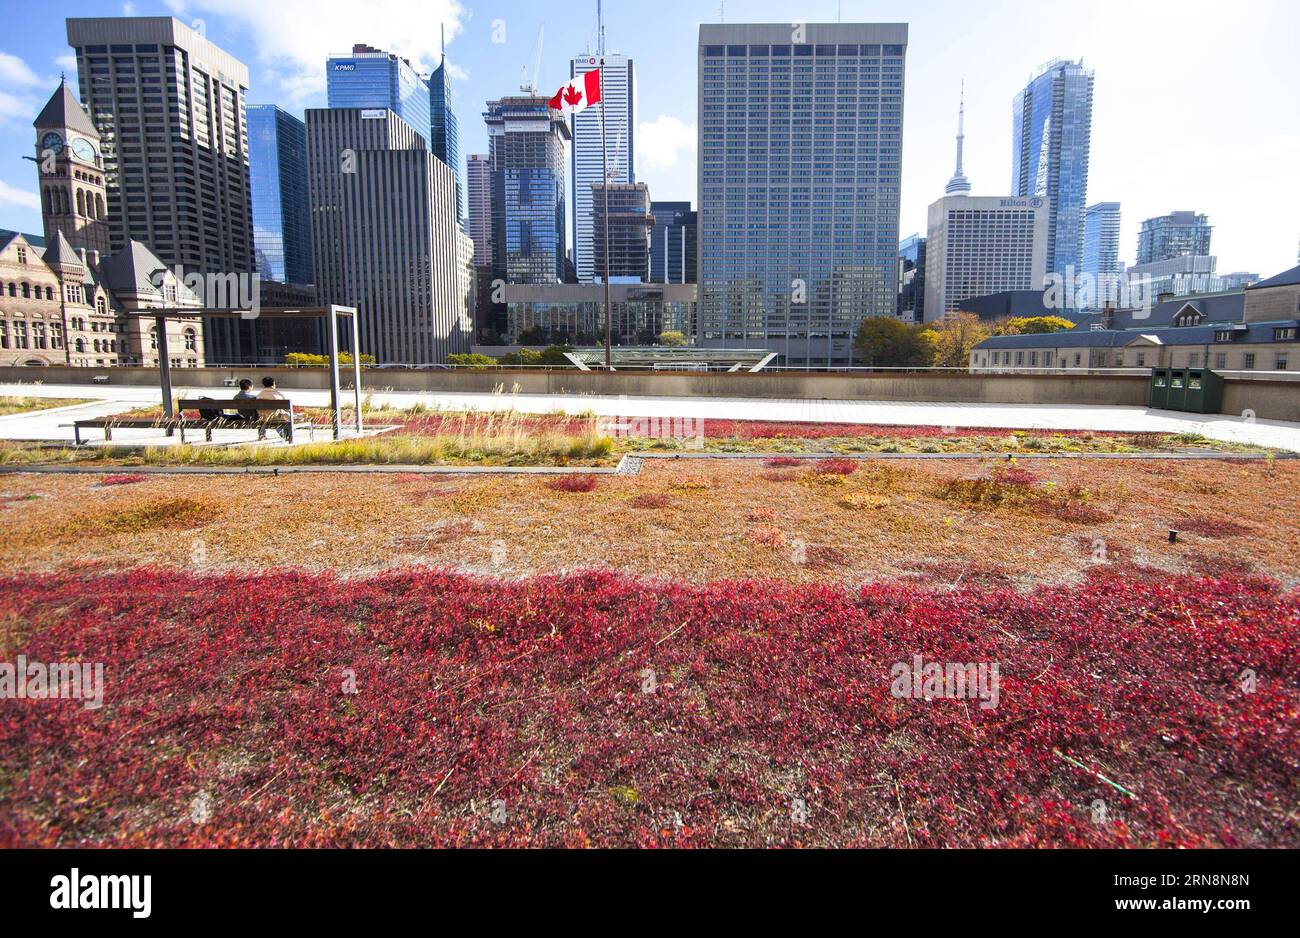 (151031) -- TORONTO, 30. Oktober 2015 -- Besucher erholen sich auf dem Podium-Green-Dach der Toronto City Hall in Toronto, Kanada, 30. Oktober 2015. Toronto ist die erste Stadt in Nordamerika, die eine Satzung hat, die den Bau von Gründächern für Neubauten vorschreibt und regelt. Vom 1. Februar 2010 bis zum 1. März 2015 wurden in Toronto 260 Gründächer mit einer Grünfläche von 196.000 Quadratmetern errichtet. In Toronto gibt es bisher insgesamt 444 begrünte Dächer. ) KANADA-TORONTO-GRÜNES DACH ZouxZheng PUBLICATIONxNOTxINxCHN Toronto OCT 30 2015 Besucher nehmen eine Pause IM Toronto City Hall S Podium Green Roo Stockfoto